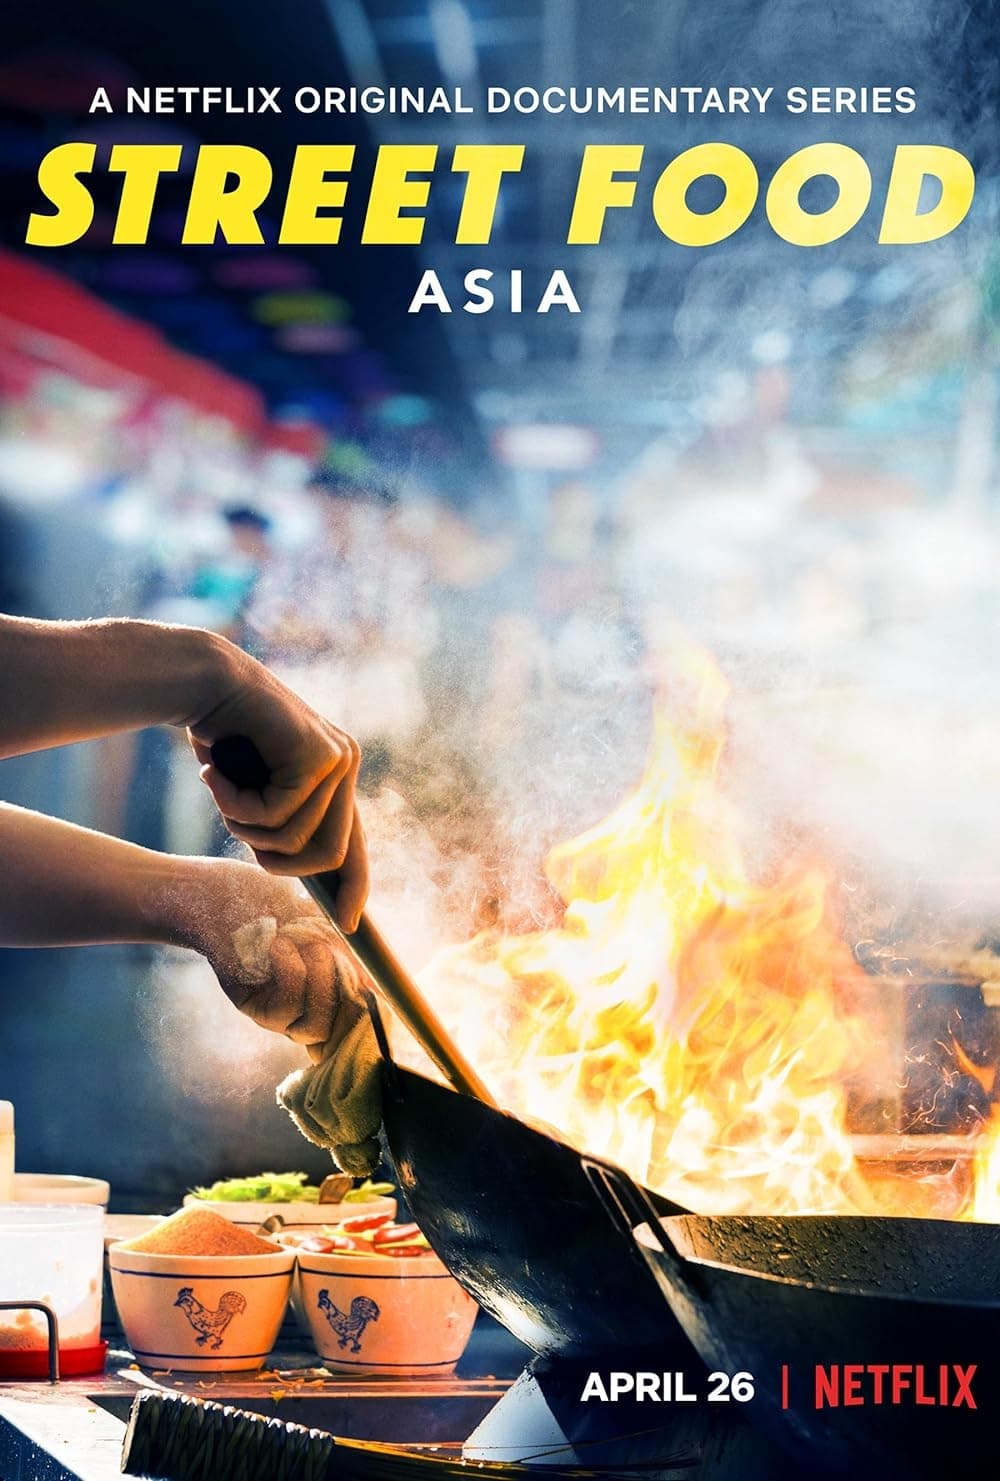 Street Food: Asia